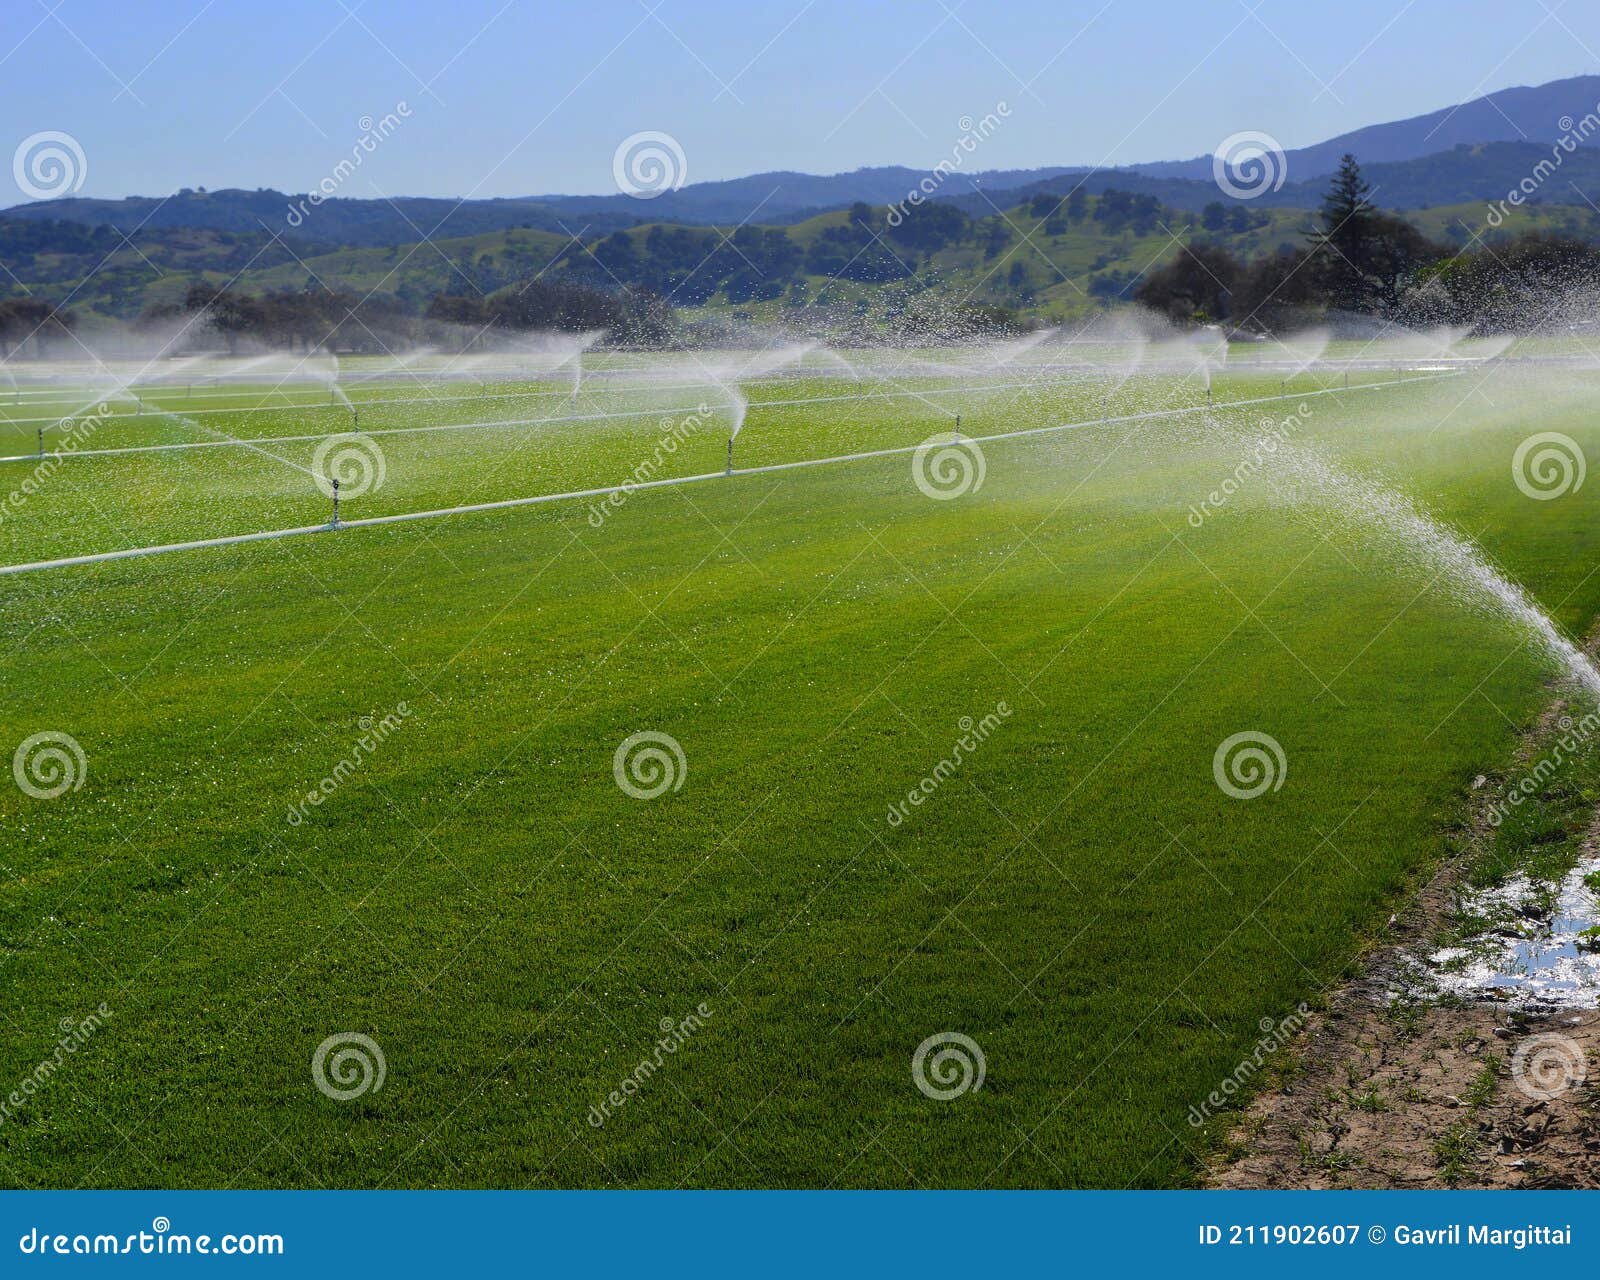 extensive irrigation on a green field